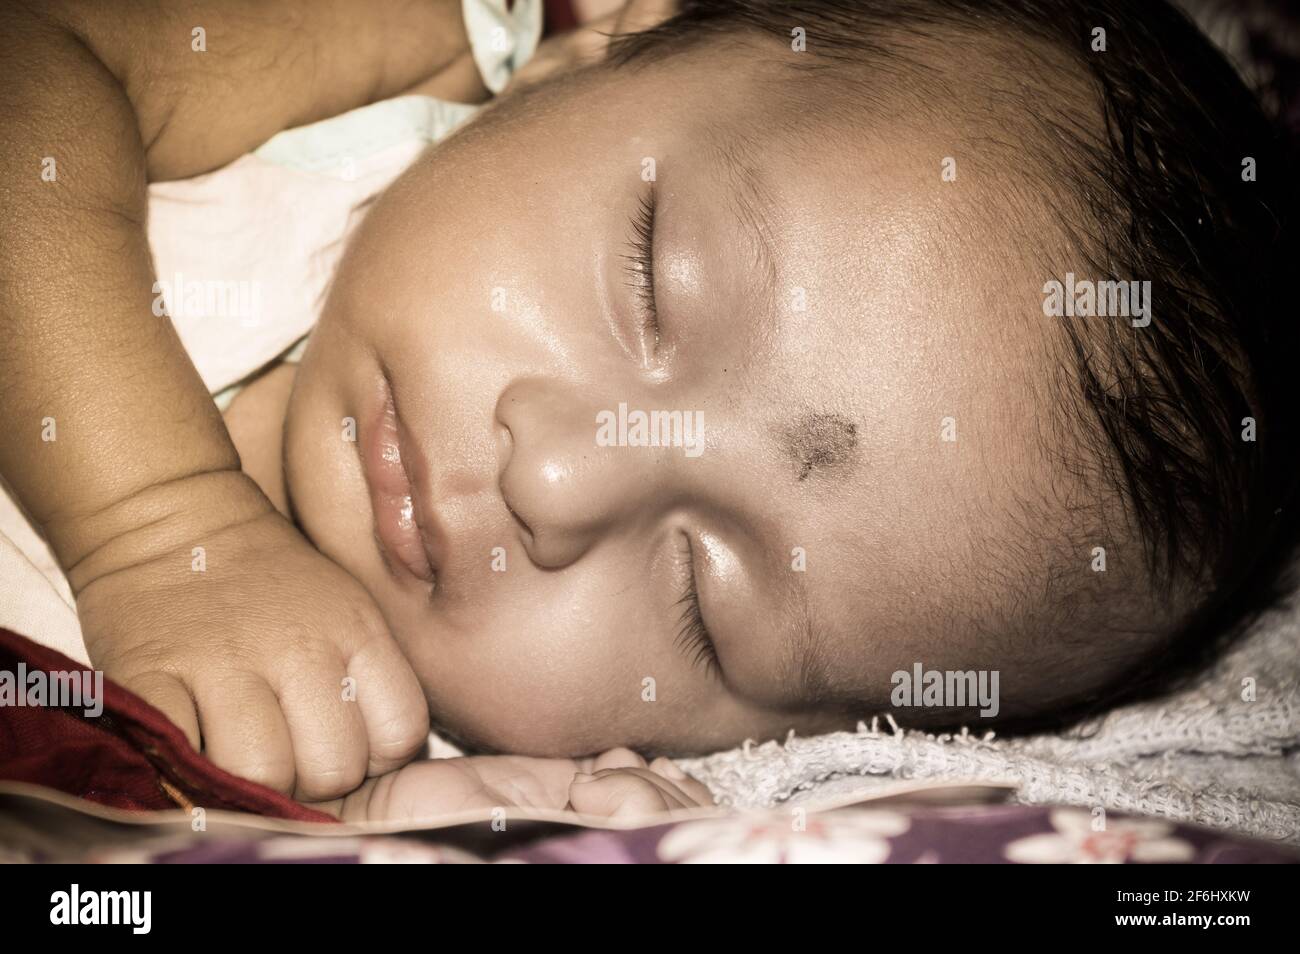 Nahaufnahme eines niedlichen schlafenden Neugeborenen. Nahaufnahme Porträt eines süßen gerade geborenen Jungen gefangen in schläfriger Stimmung schläfrige Augen. Hand auf Chin. Fro Stockfoto